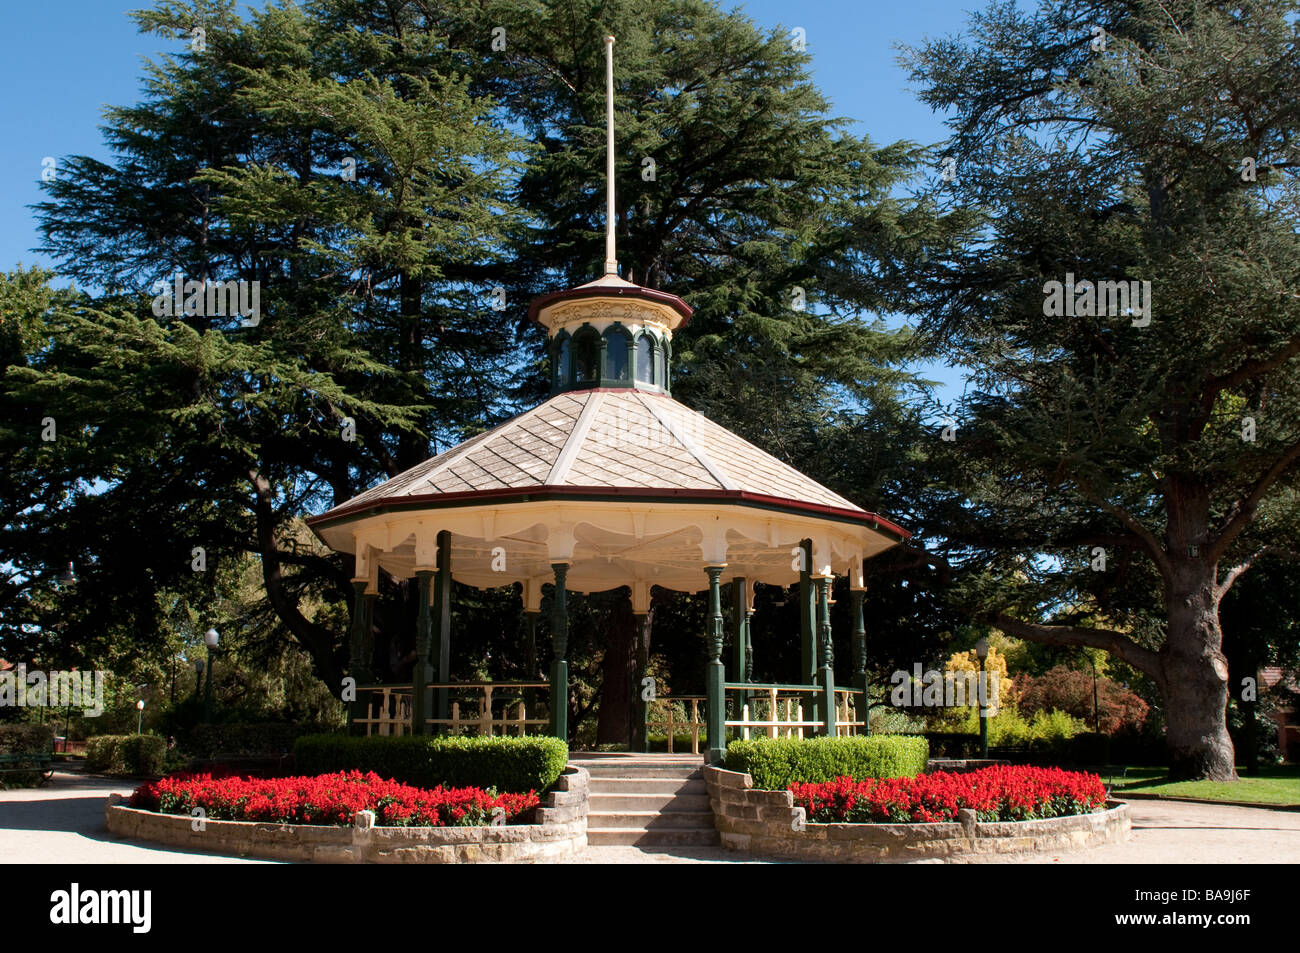 Victorian rotunda in Machattie Park, Bathurst, NSW, Australia Stock Photo